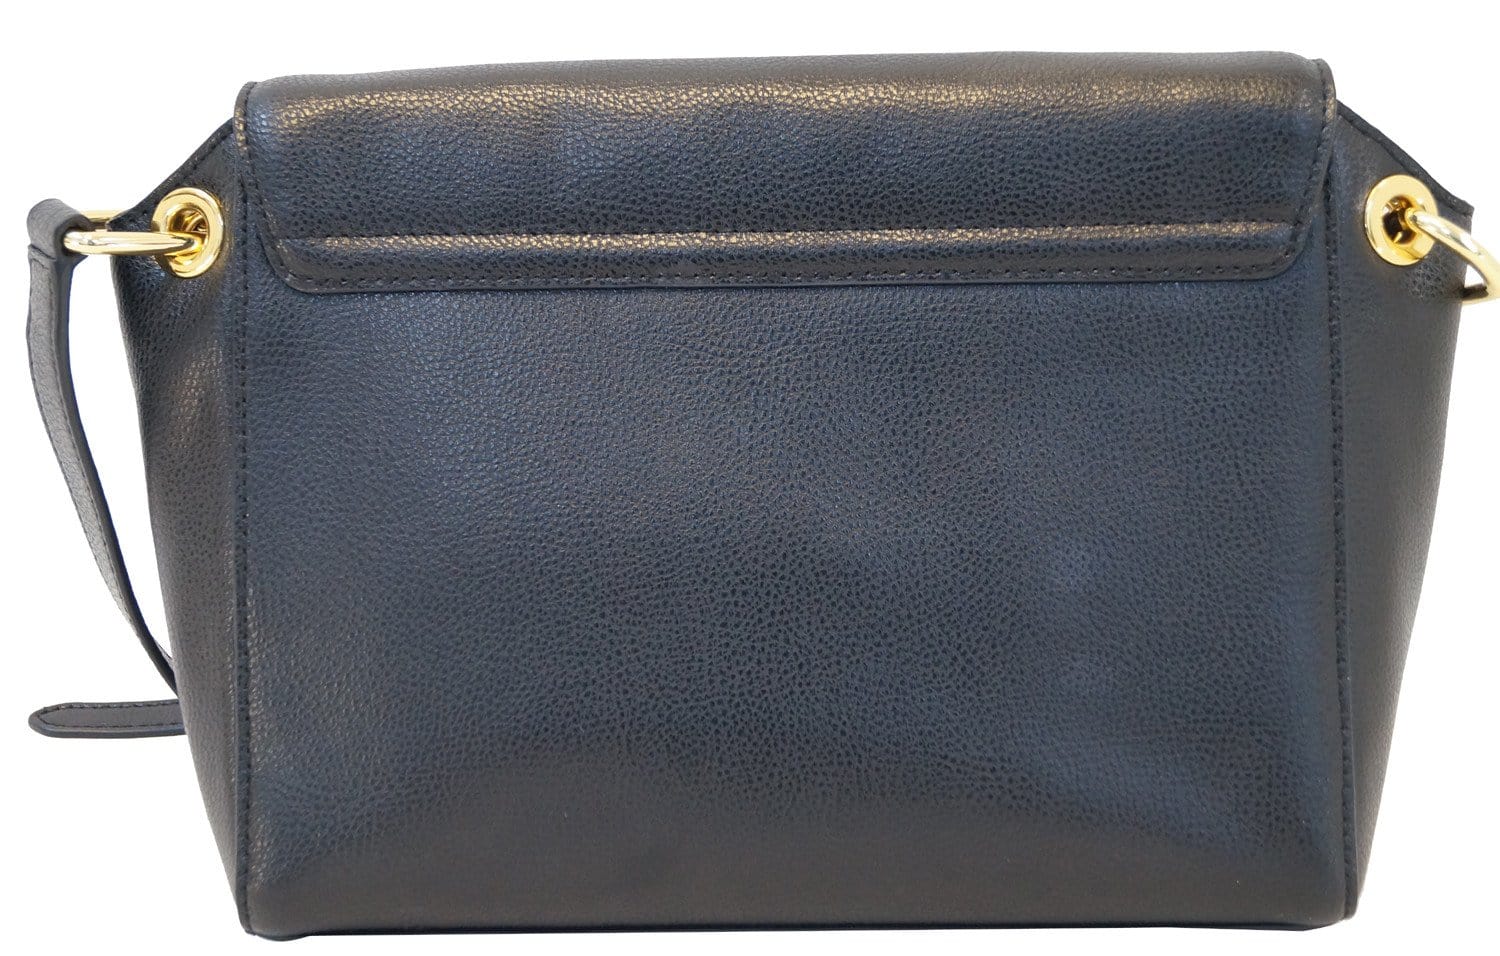 Lauren Ralph Lauren Handbags In Black